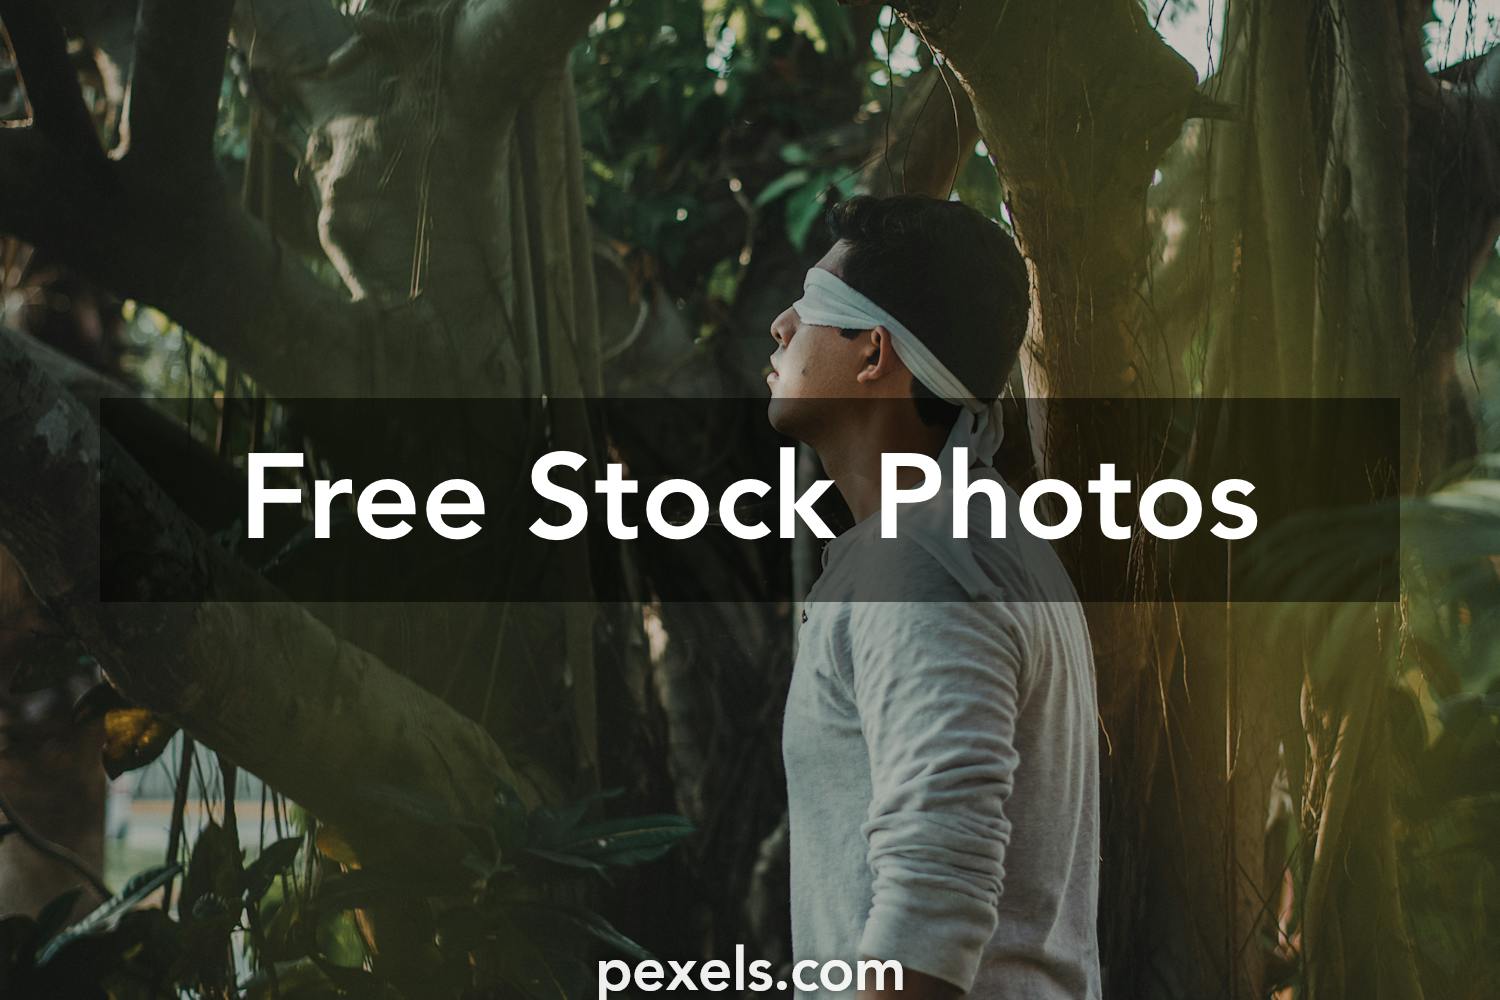 10 Beautiful Blindfold Photos Pexels Free Stock Photos Images, Photos, Reviews